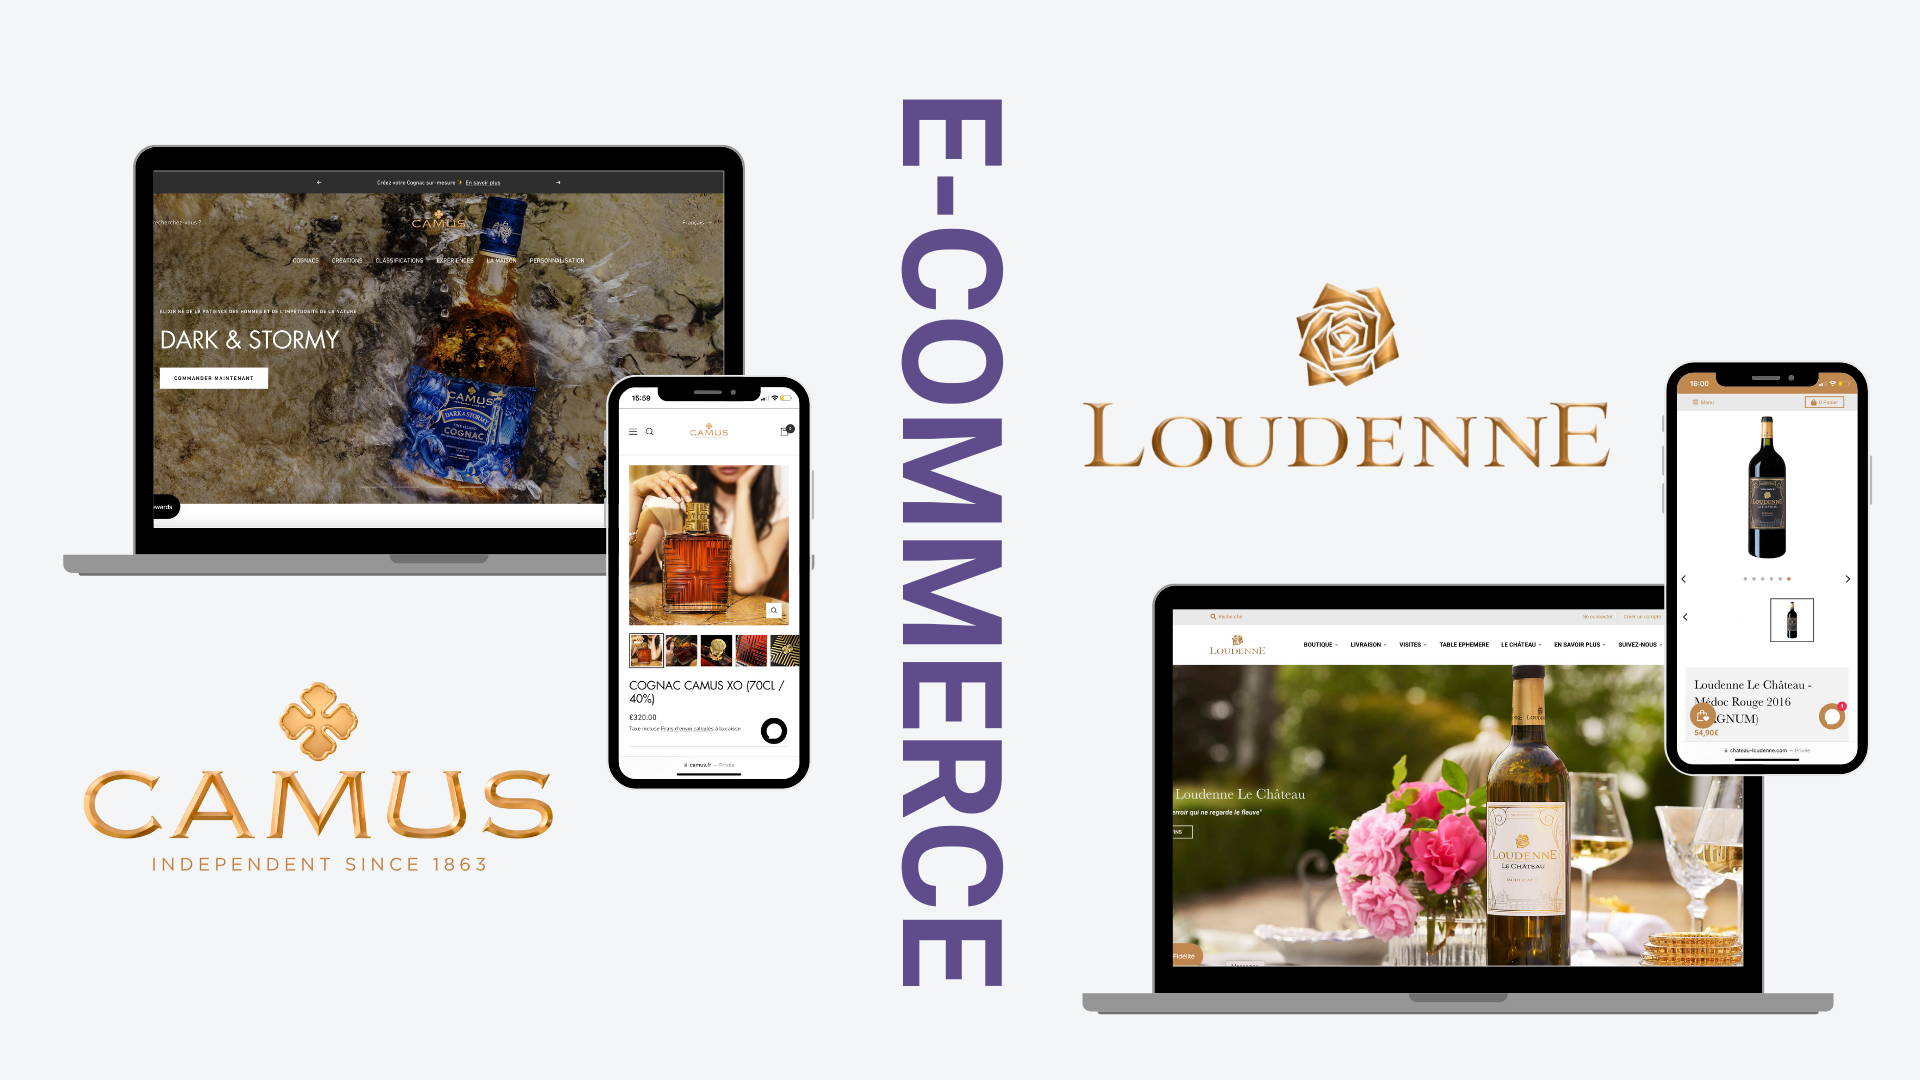 création de site web de Fancy Cellar. Un site ecommerce shopify créé pour la marque Camus Cognac